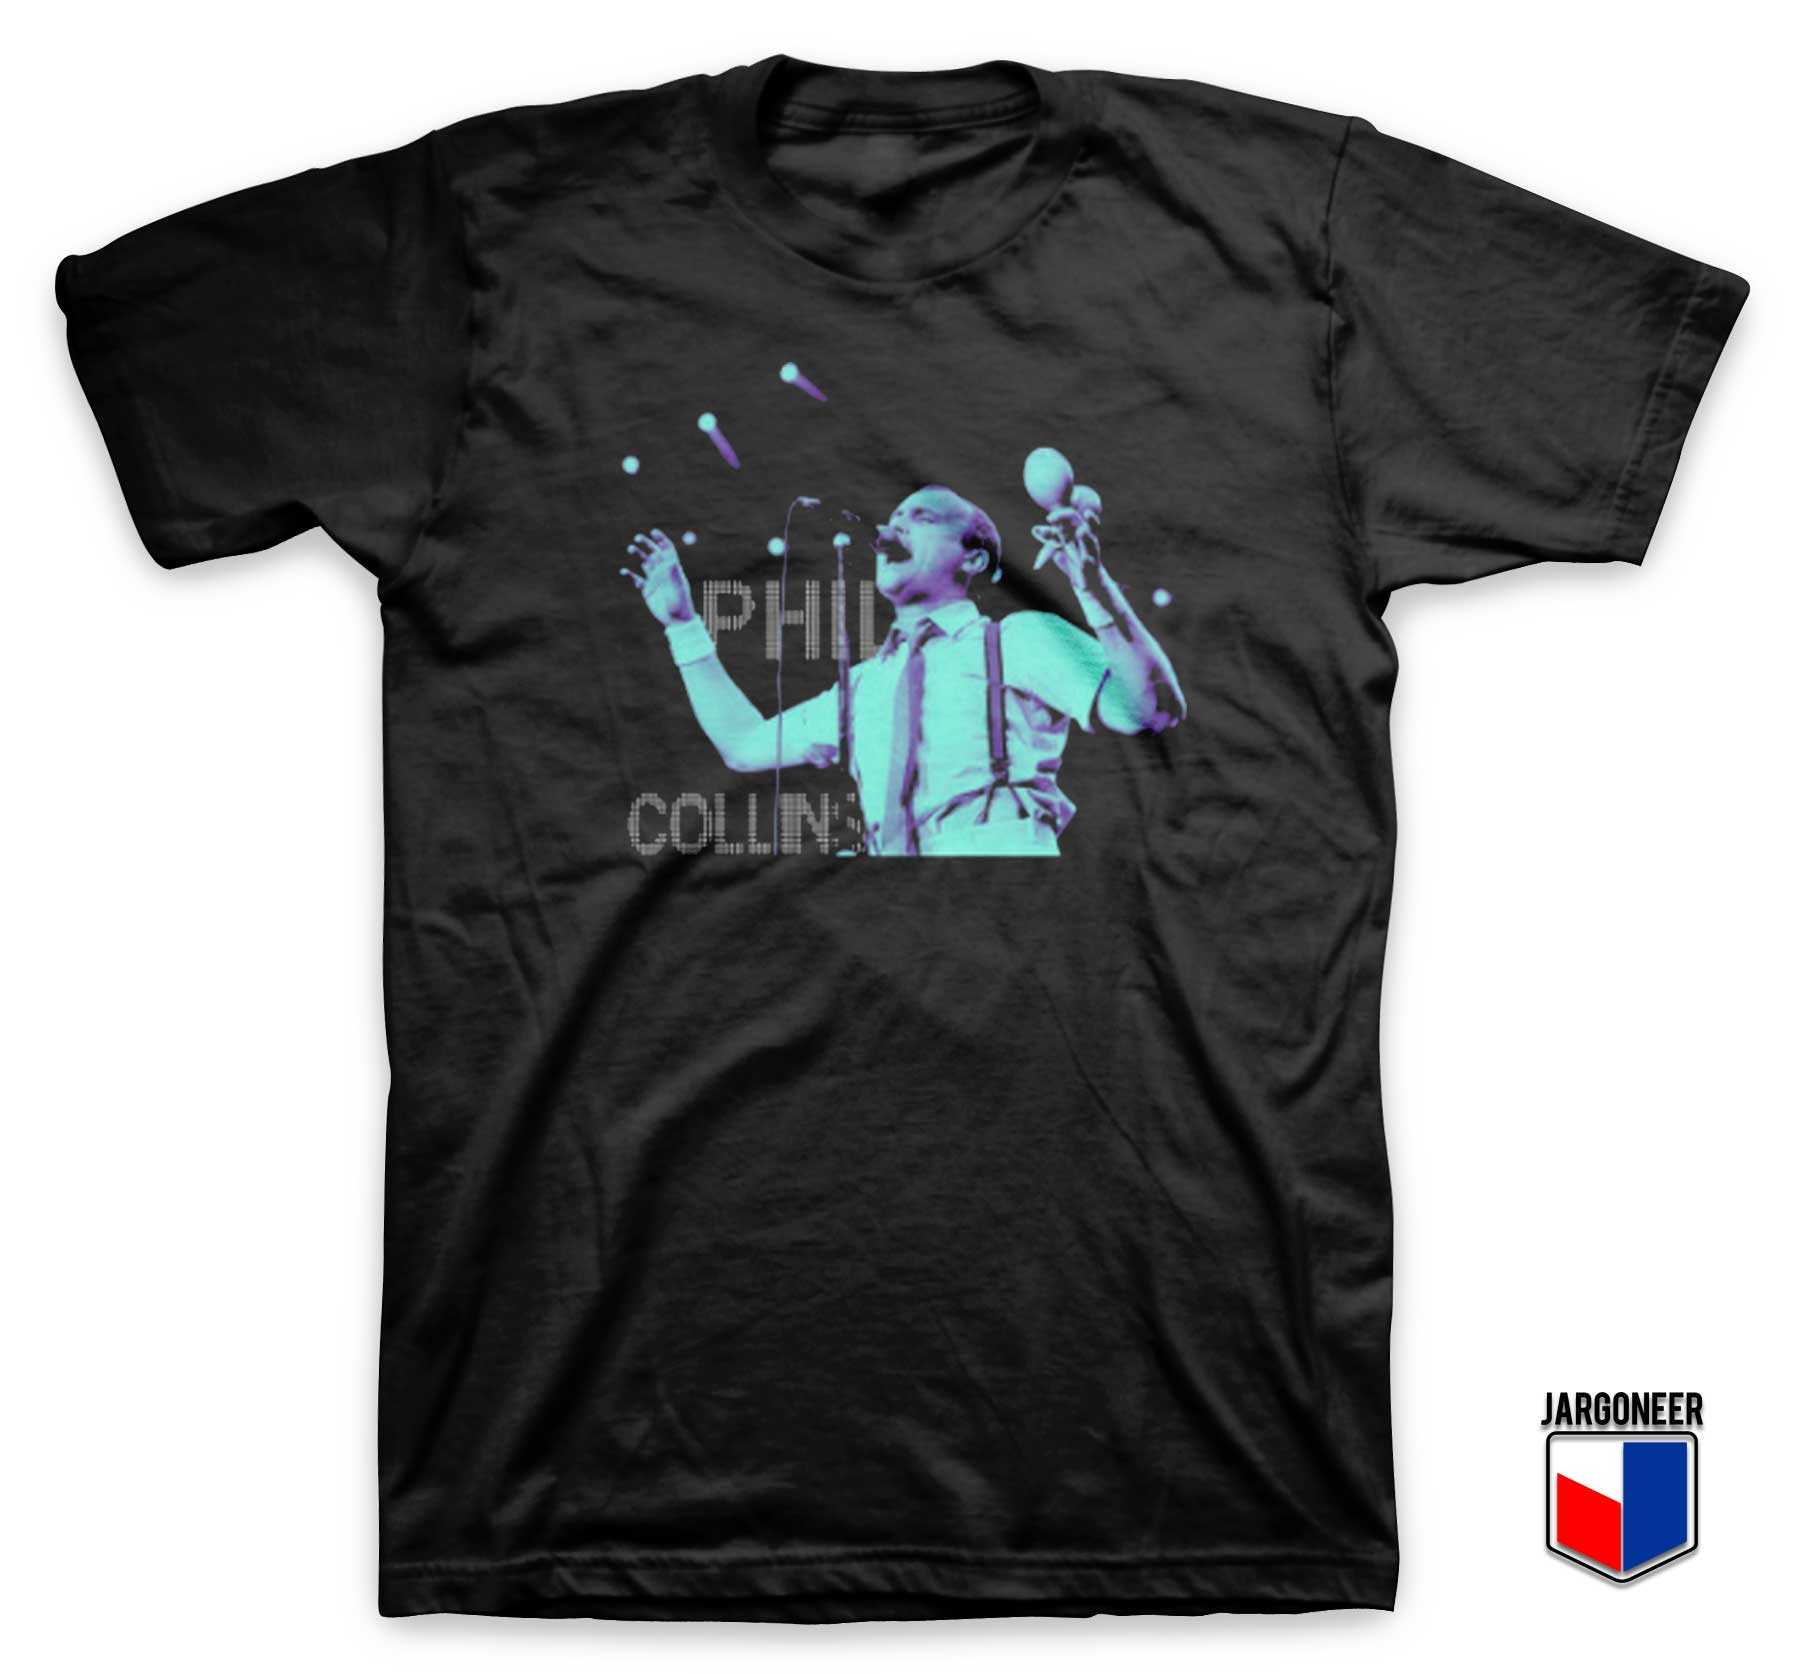 Phil Collins T Shirt - Shop Unique Graphic Cool Shirt Designs